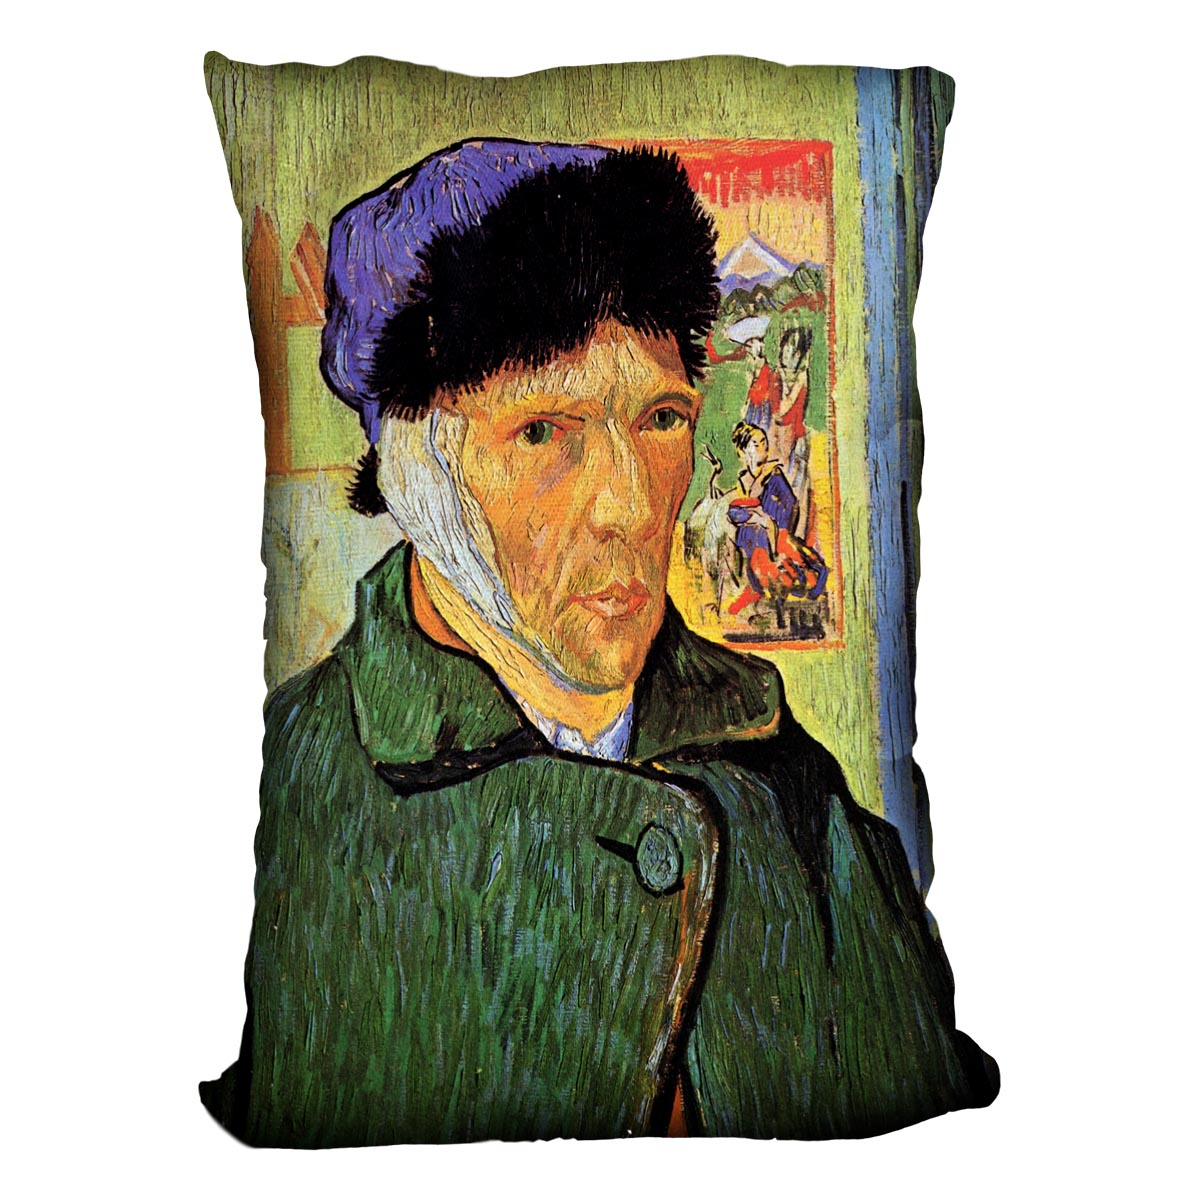 Self-Portrait 11 by Van Gogh Cushion